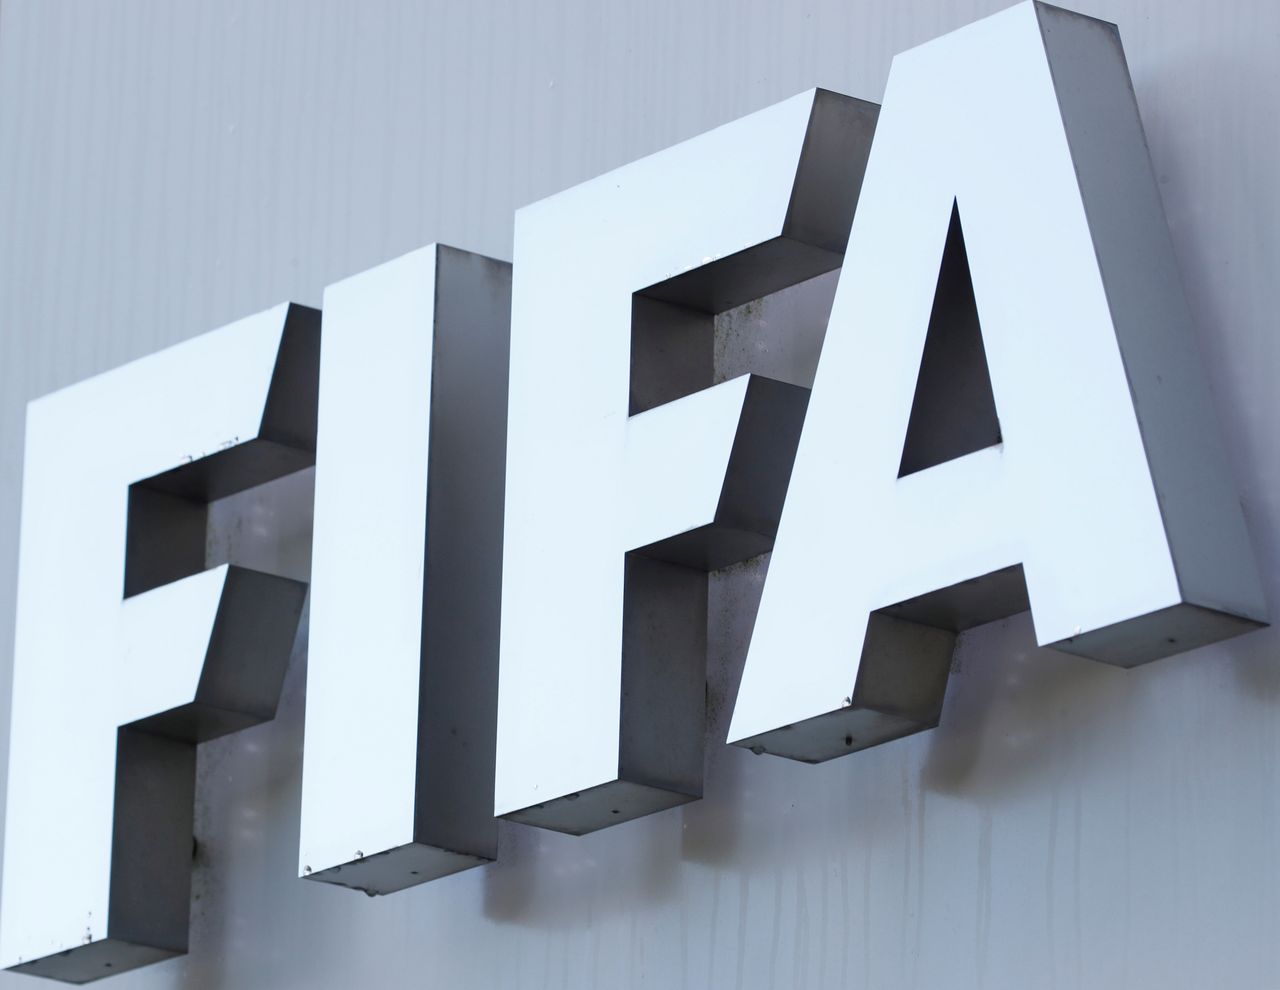 شعار الاتحاد الدولي لكرة القدم (الفيفا) أمام مقره في زوريخ في صورة من أرشيف رويترز.